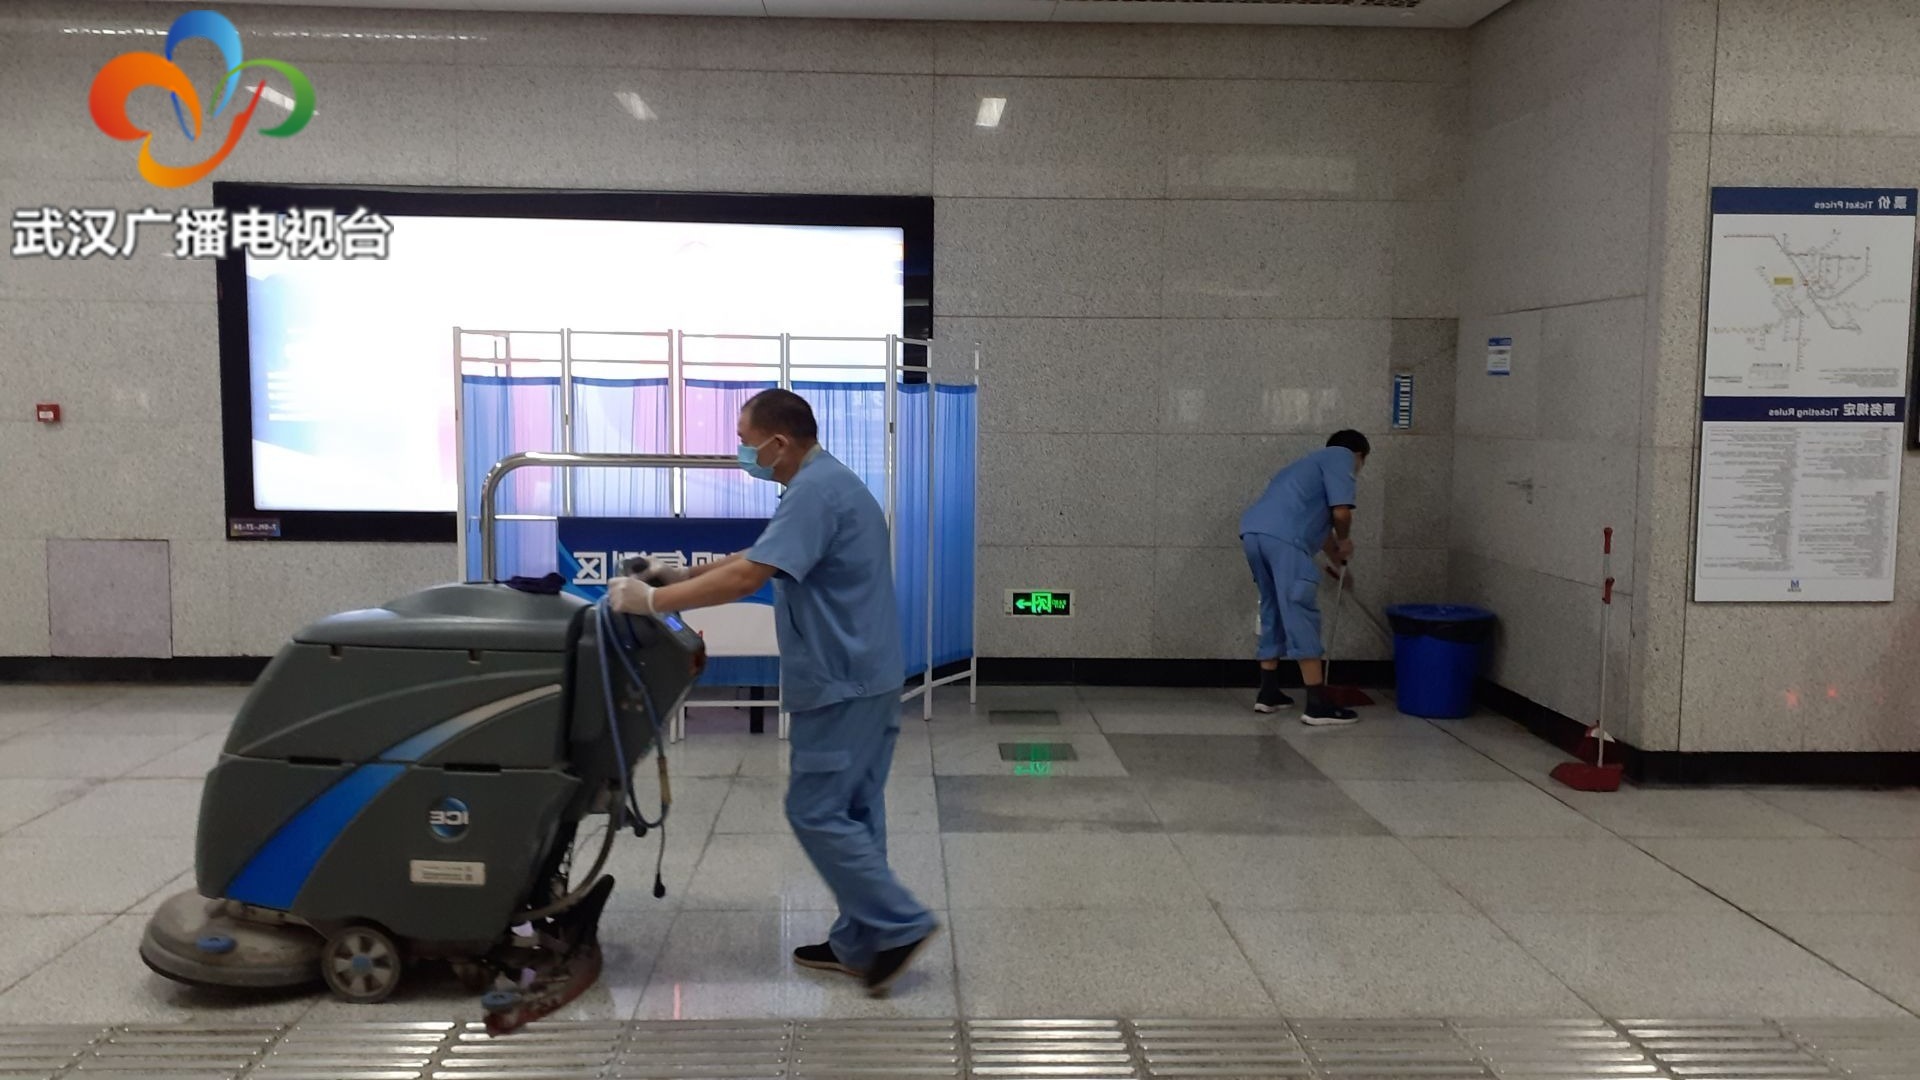 武汉地铁多举措强化防控 乘客积极配合保障安全出行